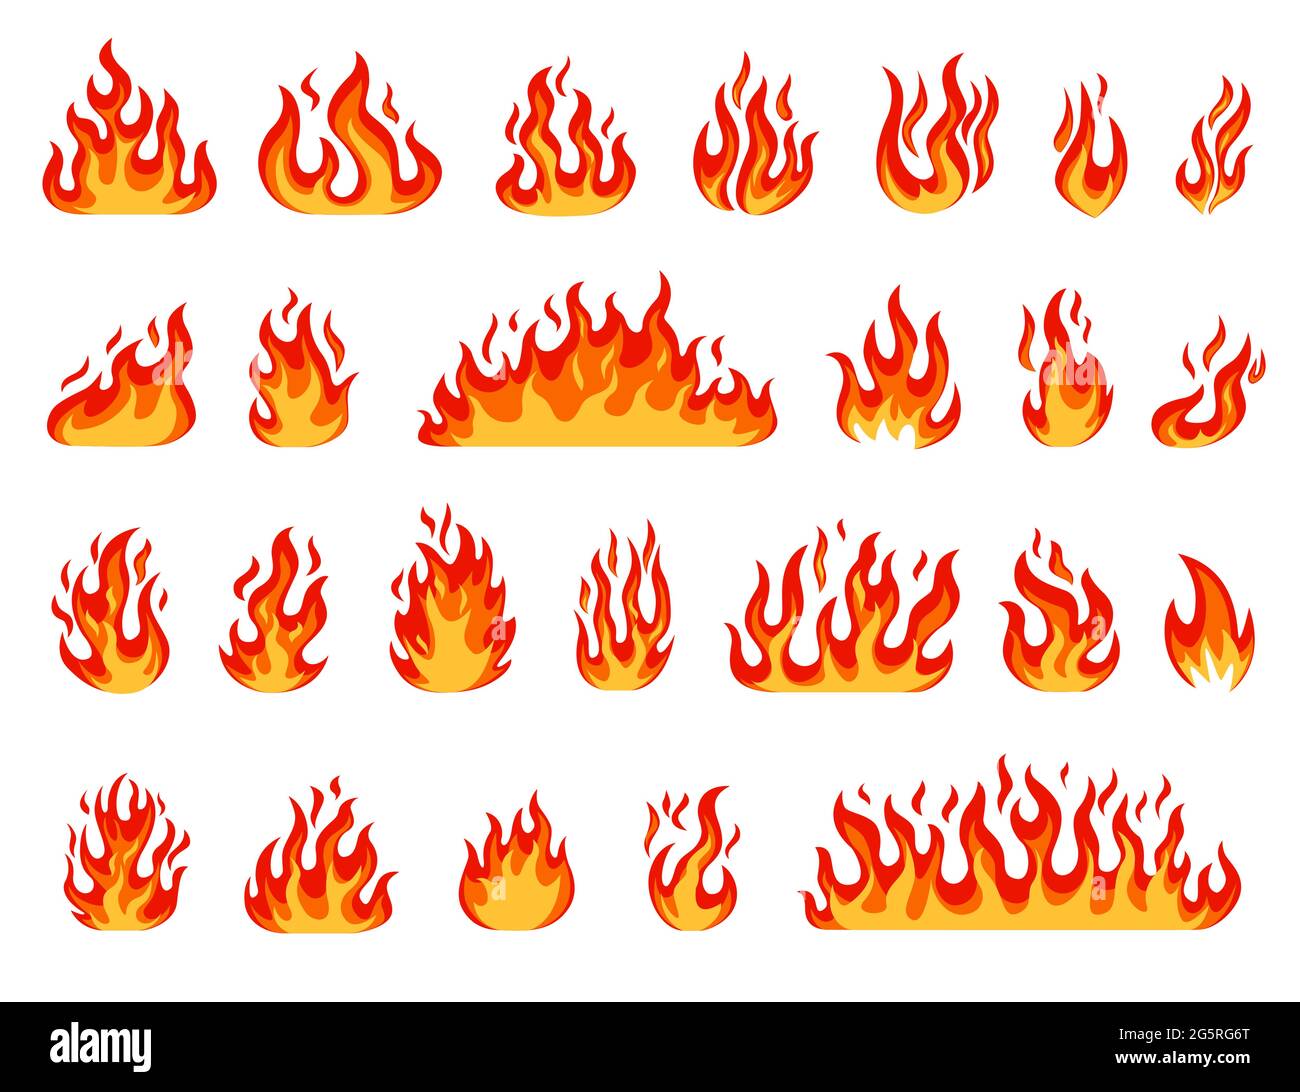 https://c8.alamy.com/compit/2g5rg6t/fiamma-del-cartone-animato-fiamme-di-falo-palloni-da-fuoco-fiamme-di-candela-o-di-torcia-fuoco-che-brucia-fumetto-rosso-o-arancione-fuoco-caldo-fuoco-effetto-insieme-vettoriale-calore-pericoloso-oggetti-ignifughi-infiammabili-2g5rg6t.jpg